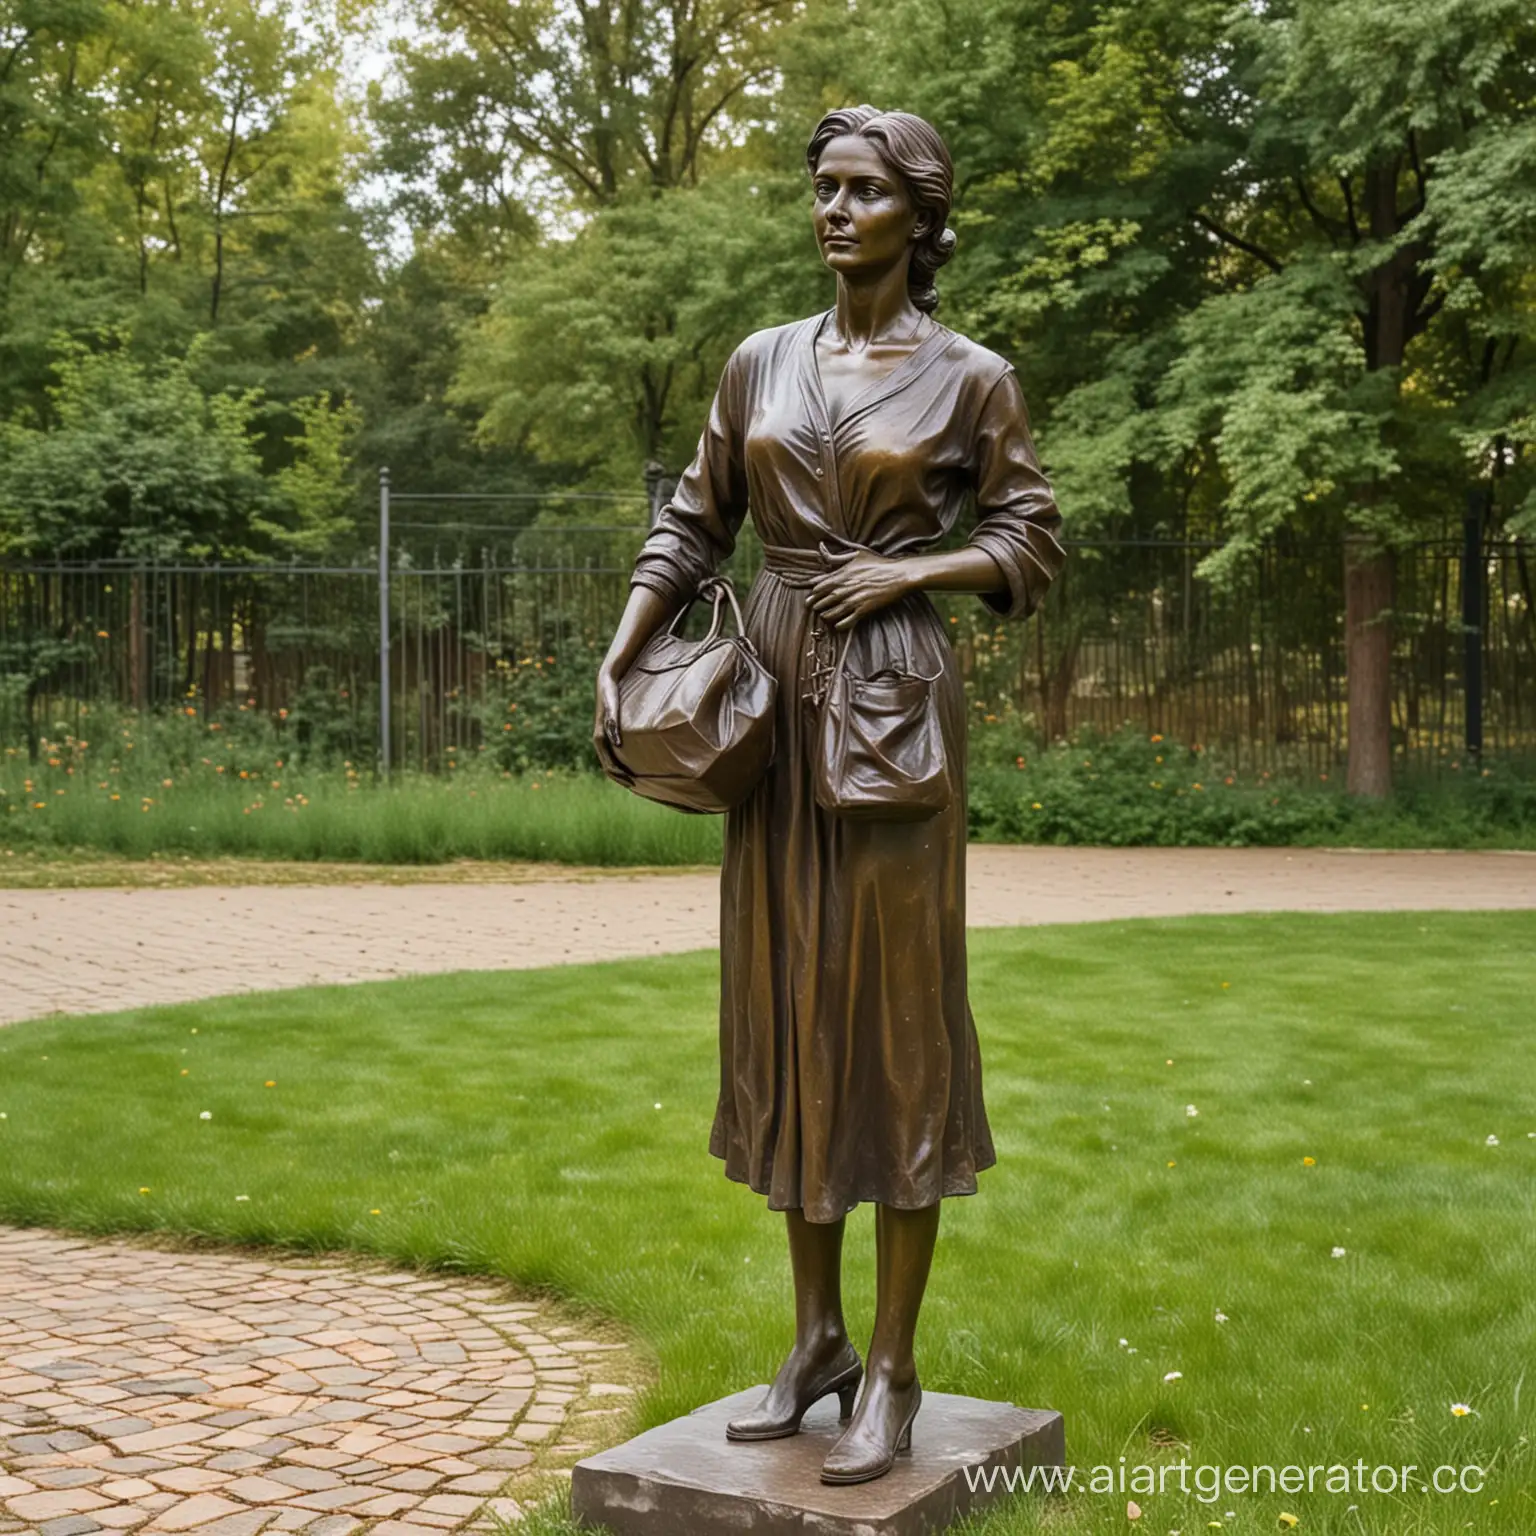 бронзовая скульптура женщины с пакетом в руках, стоит на газоне в российском дворе
 